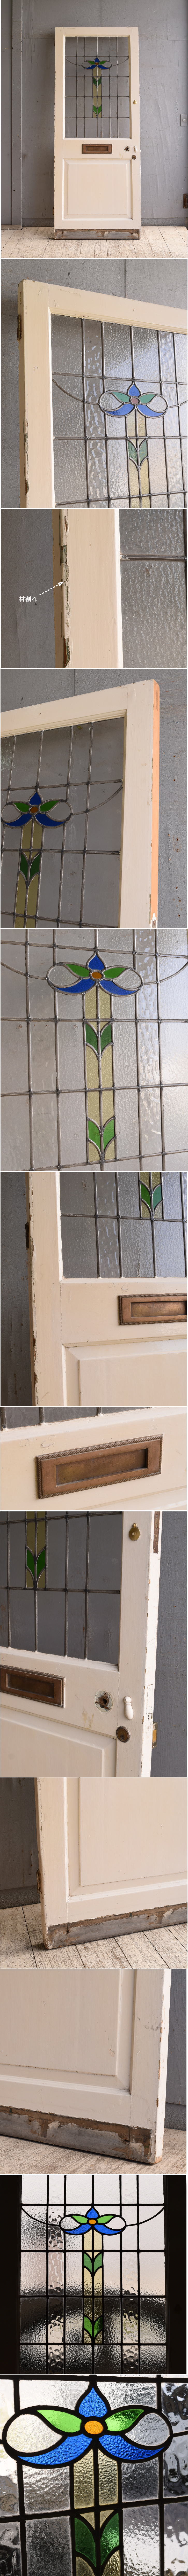 イギリス アンティーク ステンドグラス入り木製ドア 扉 建具 10155